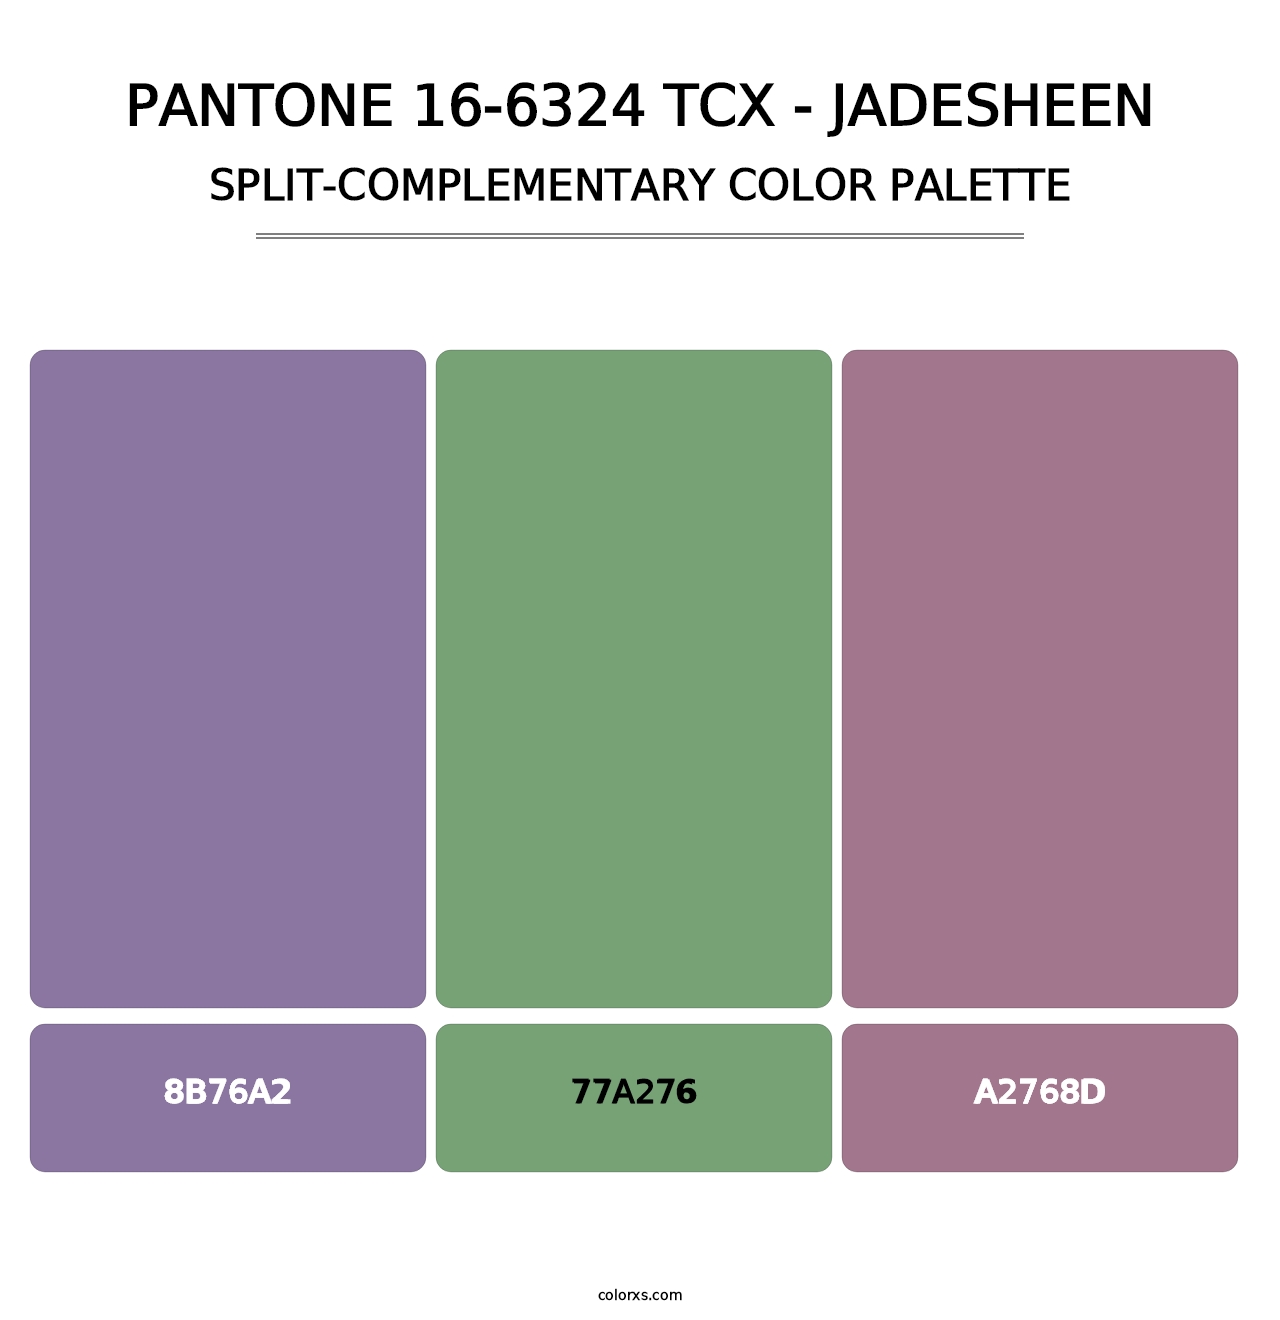 PANTONE 16-6324 TCX - Jadesheen - Split-Complementary Color Palette